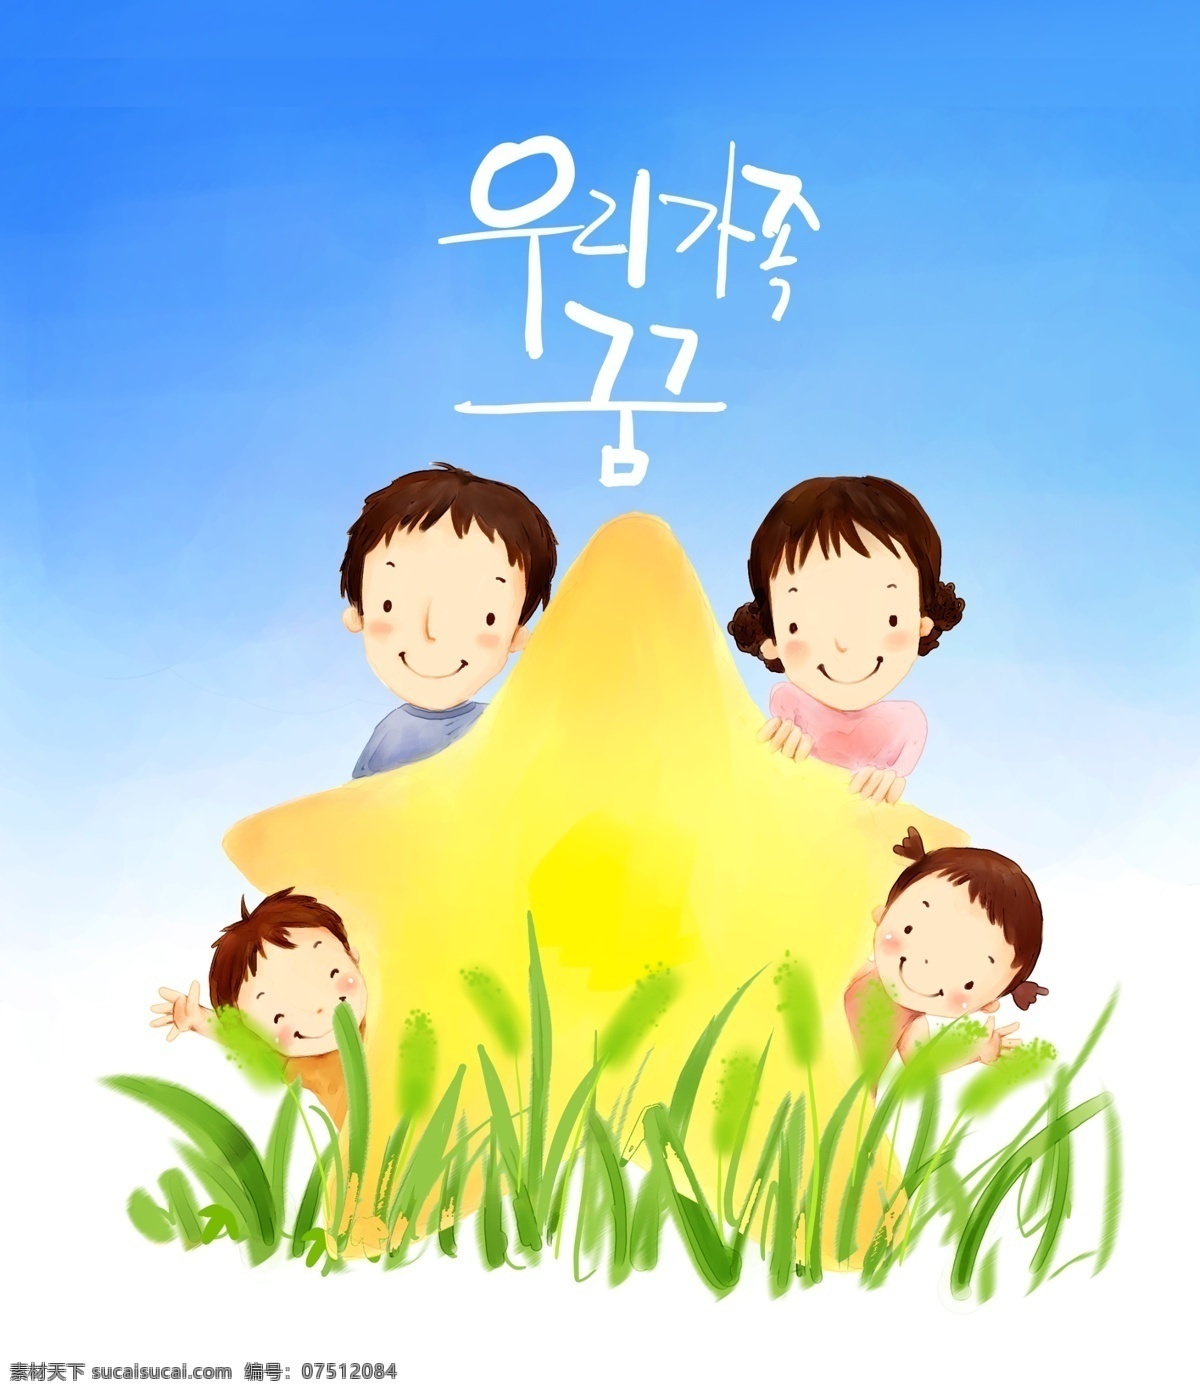 欢乐家庭 卡通漫画 韩式风格 分层 psd0046 设计素材 家庭生活 分层插画 psd源文件 白色